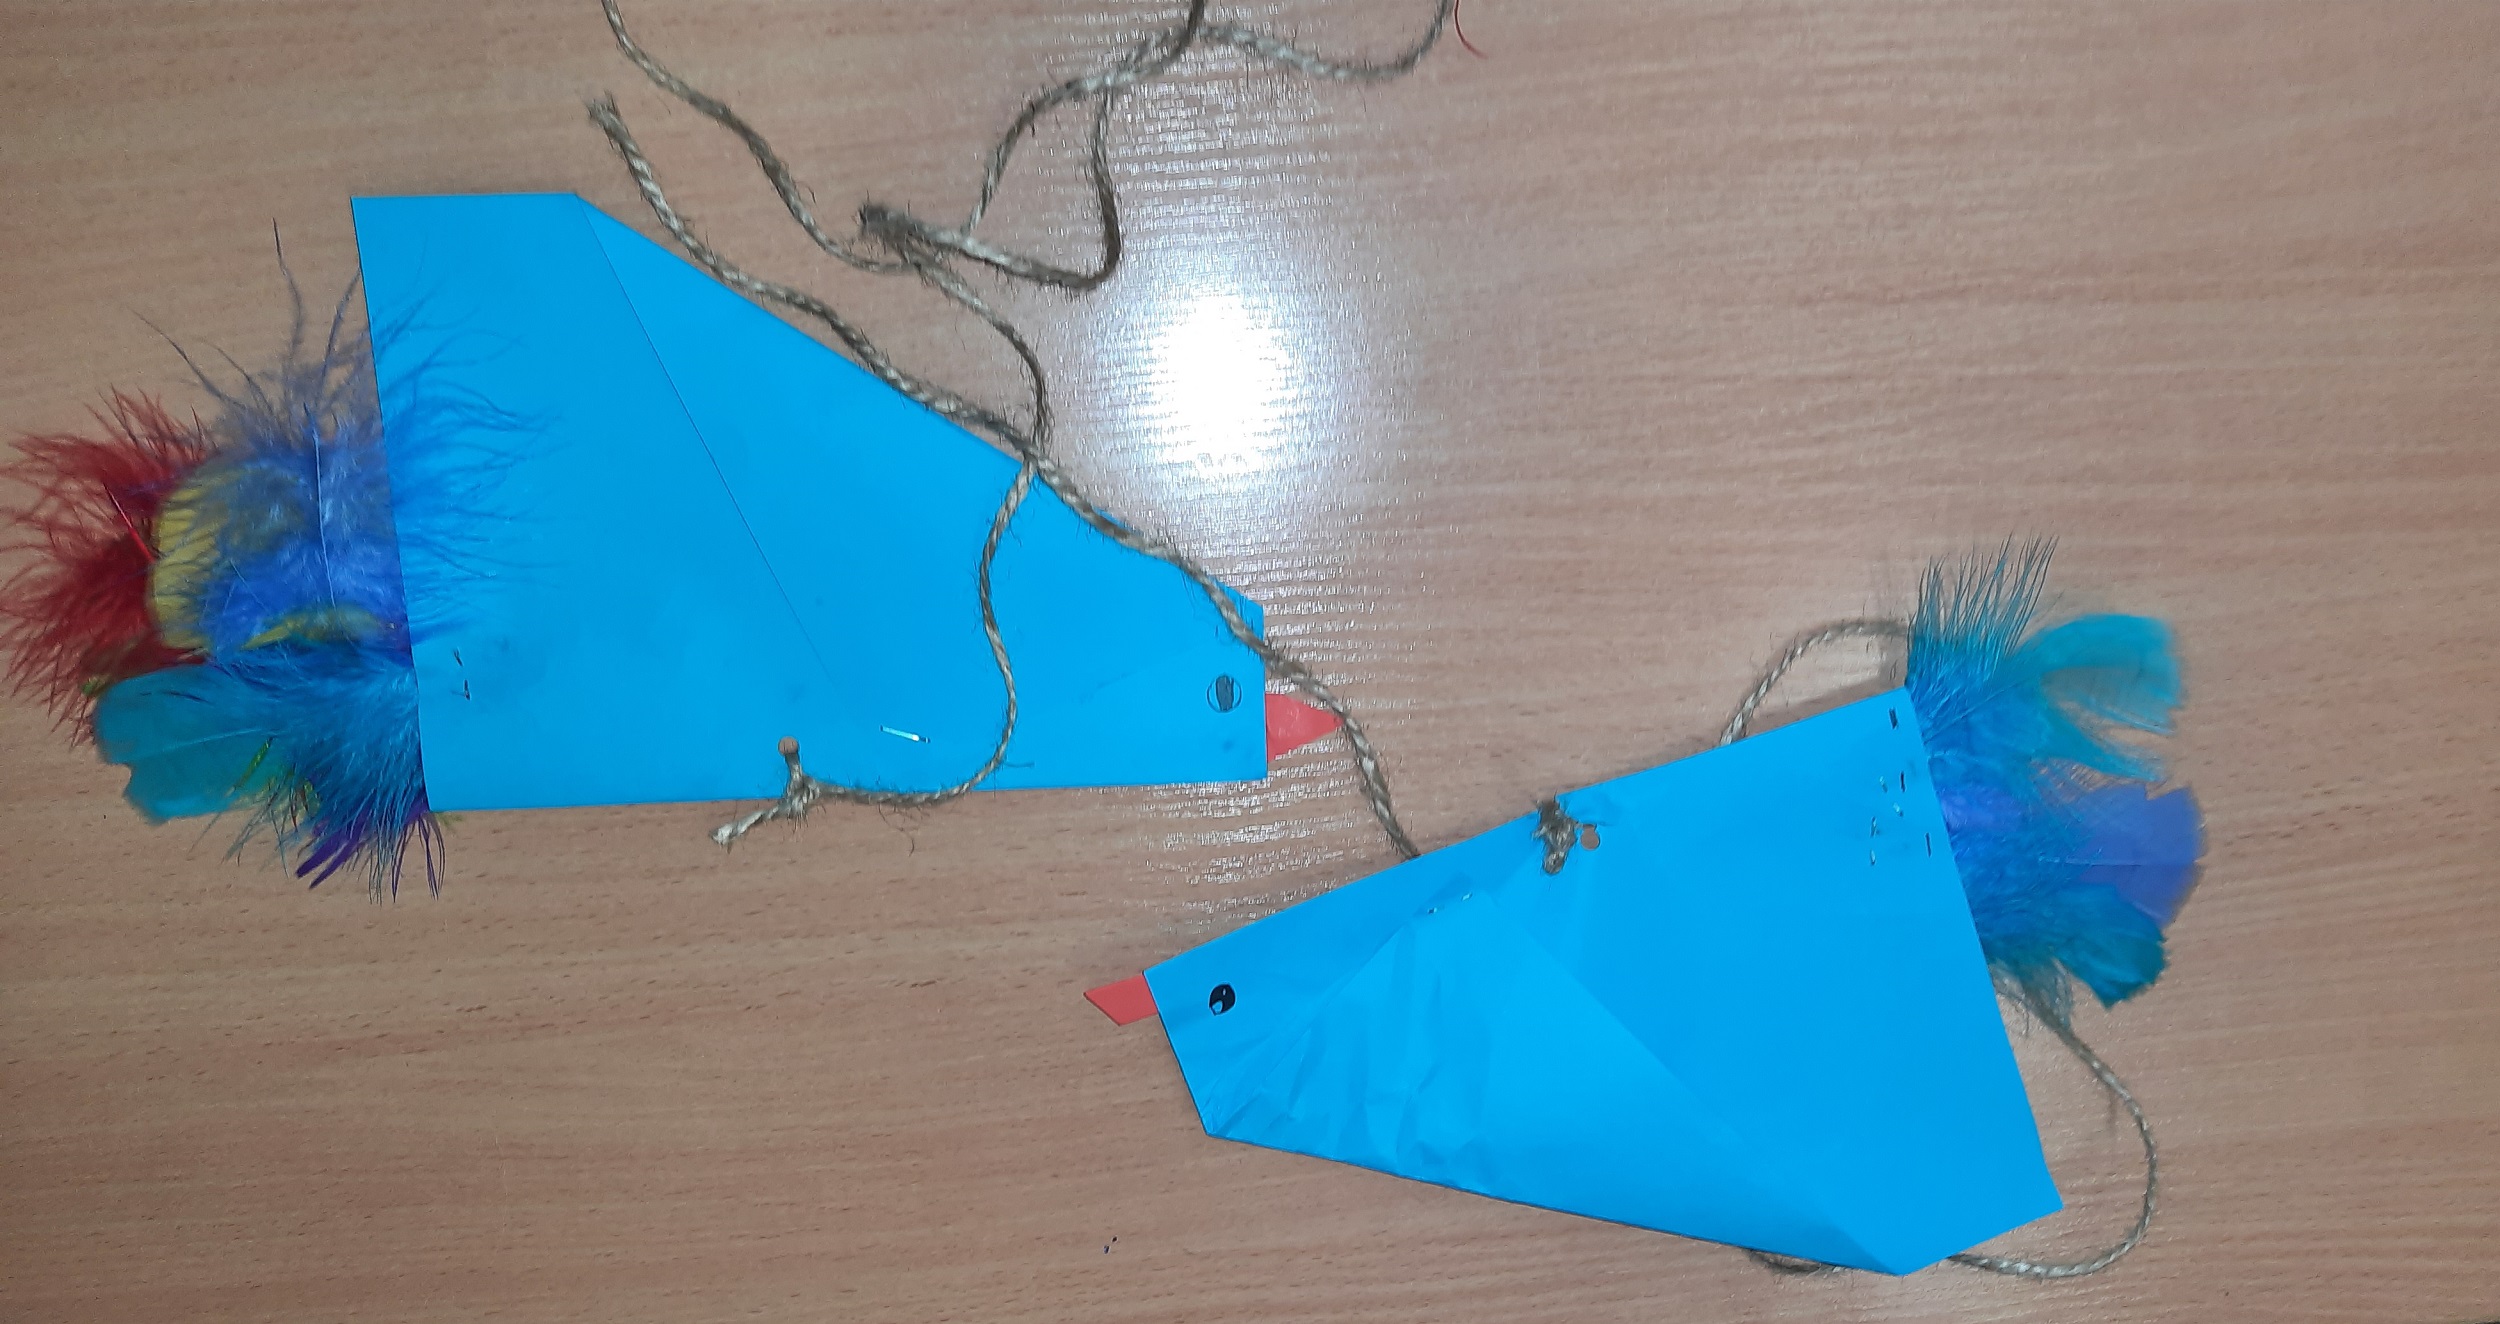 Na stoliku leżą dwa niebieskie latawce w kształcie ptaków z doklejonymi kolorowymi piórkami. Latawce również mają doczepione sznurki.